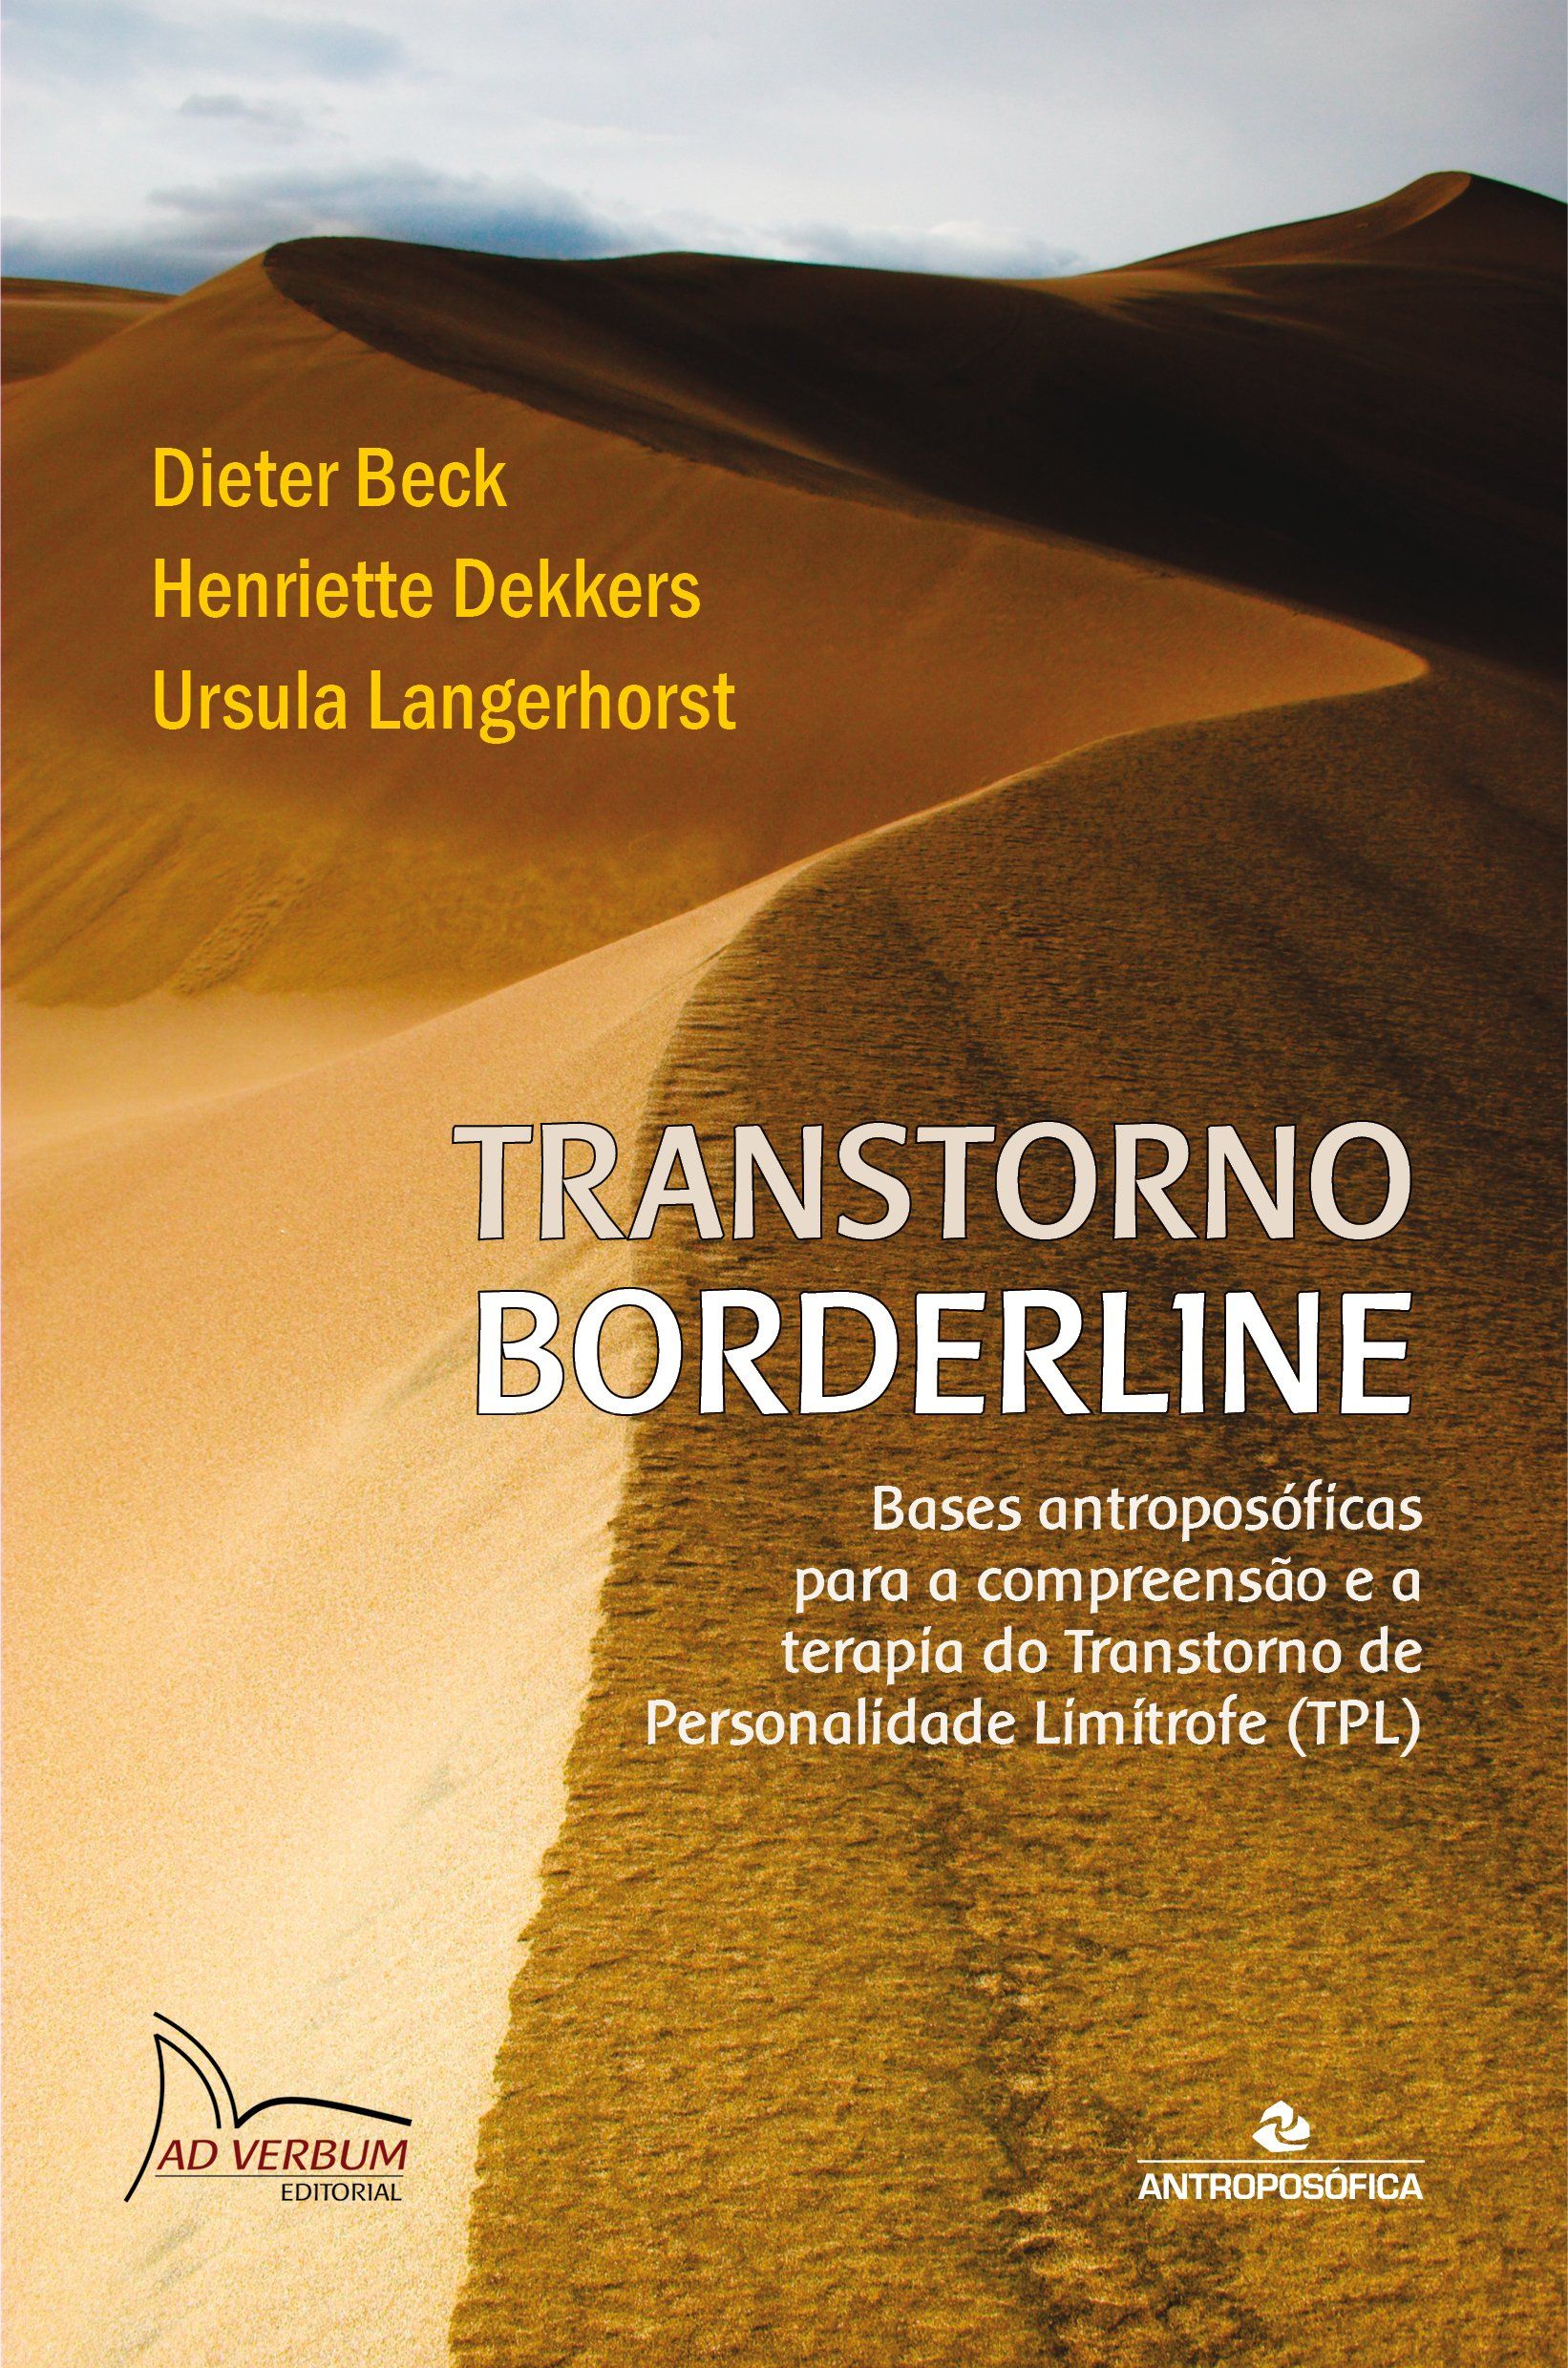 TRANSTORNO BORDERLINE - Dieter Beck et al.